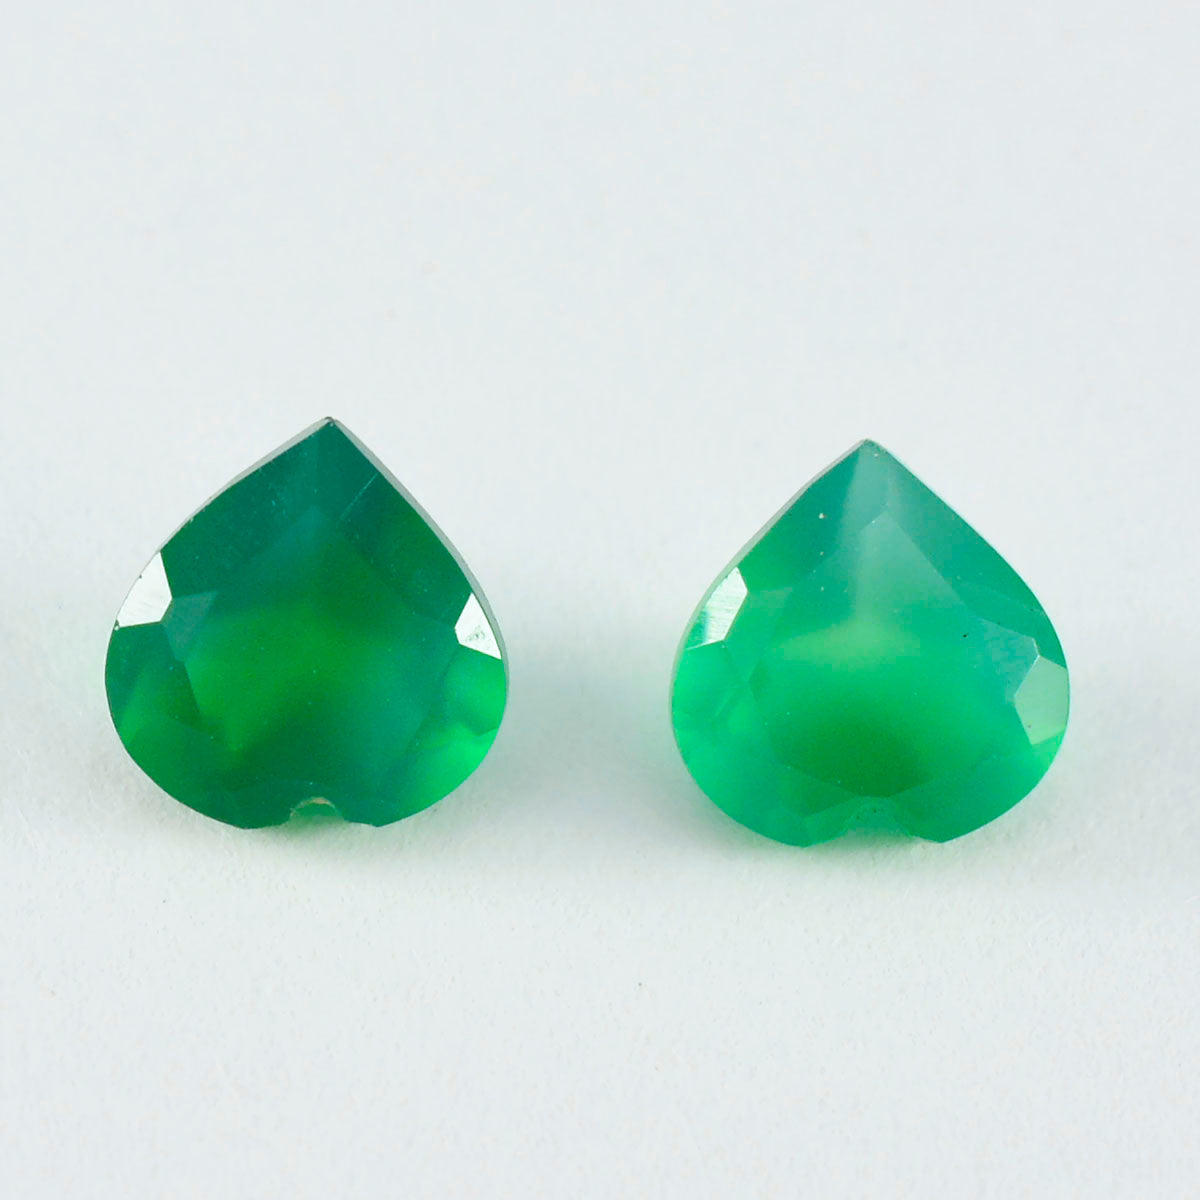 riyogems 1 шт. натуральный зеленый оникс ограненный 8x8 мм в форме сердца красивый качественный камень